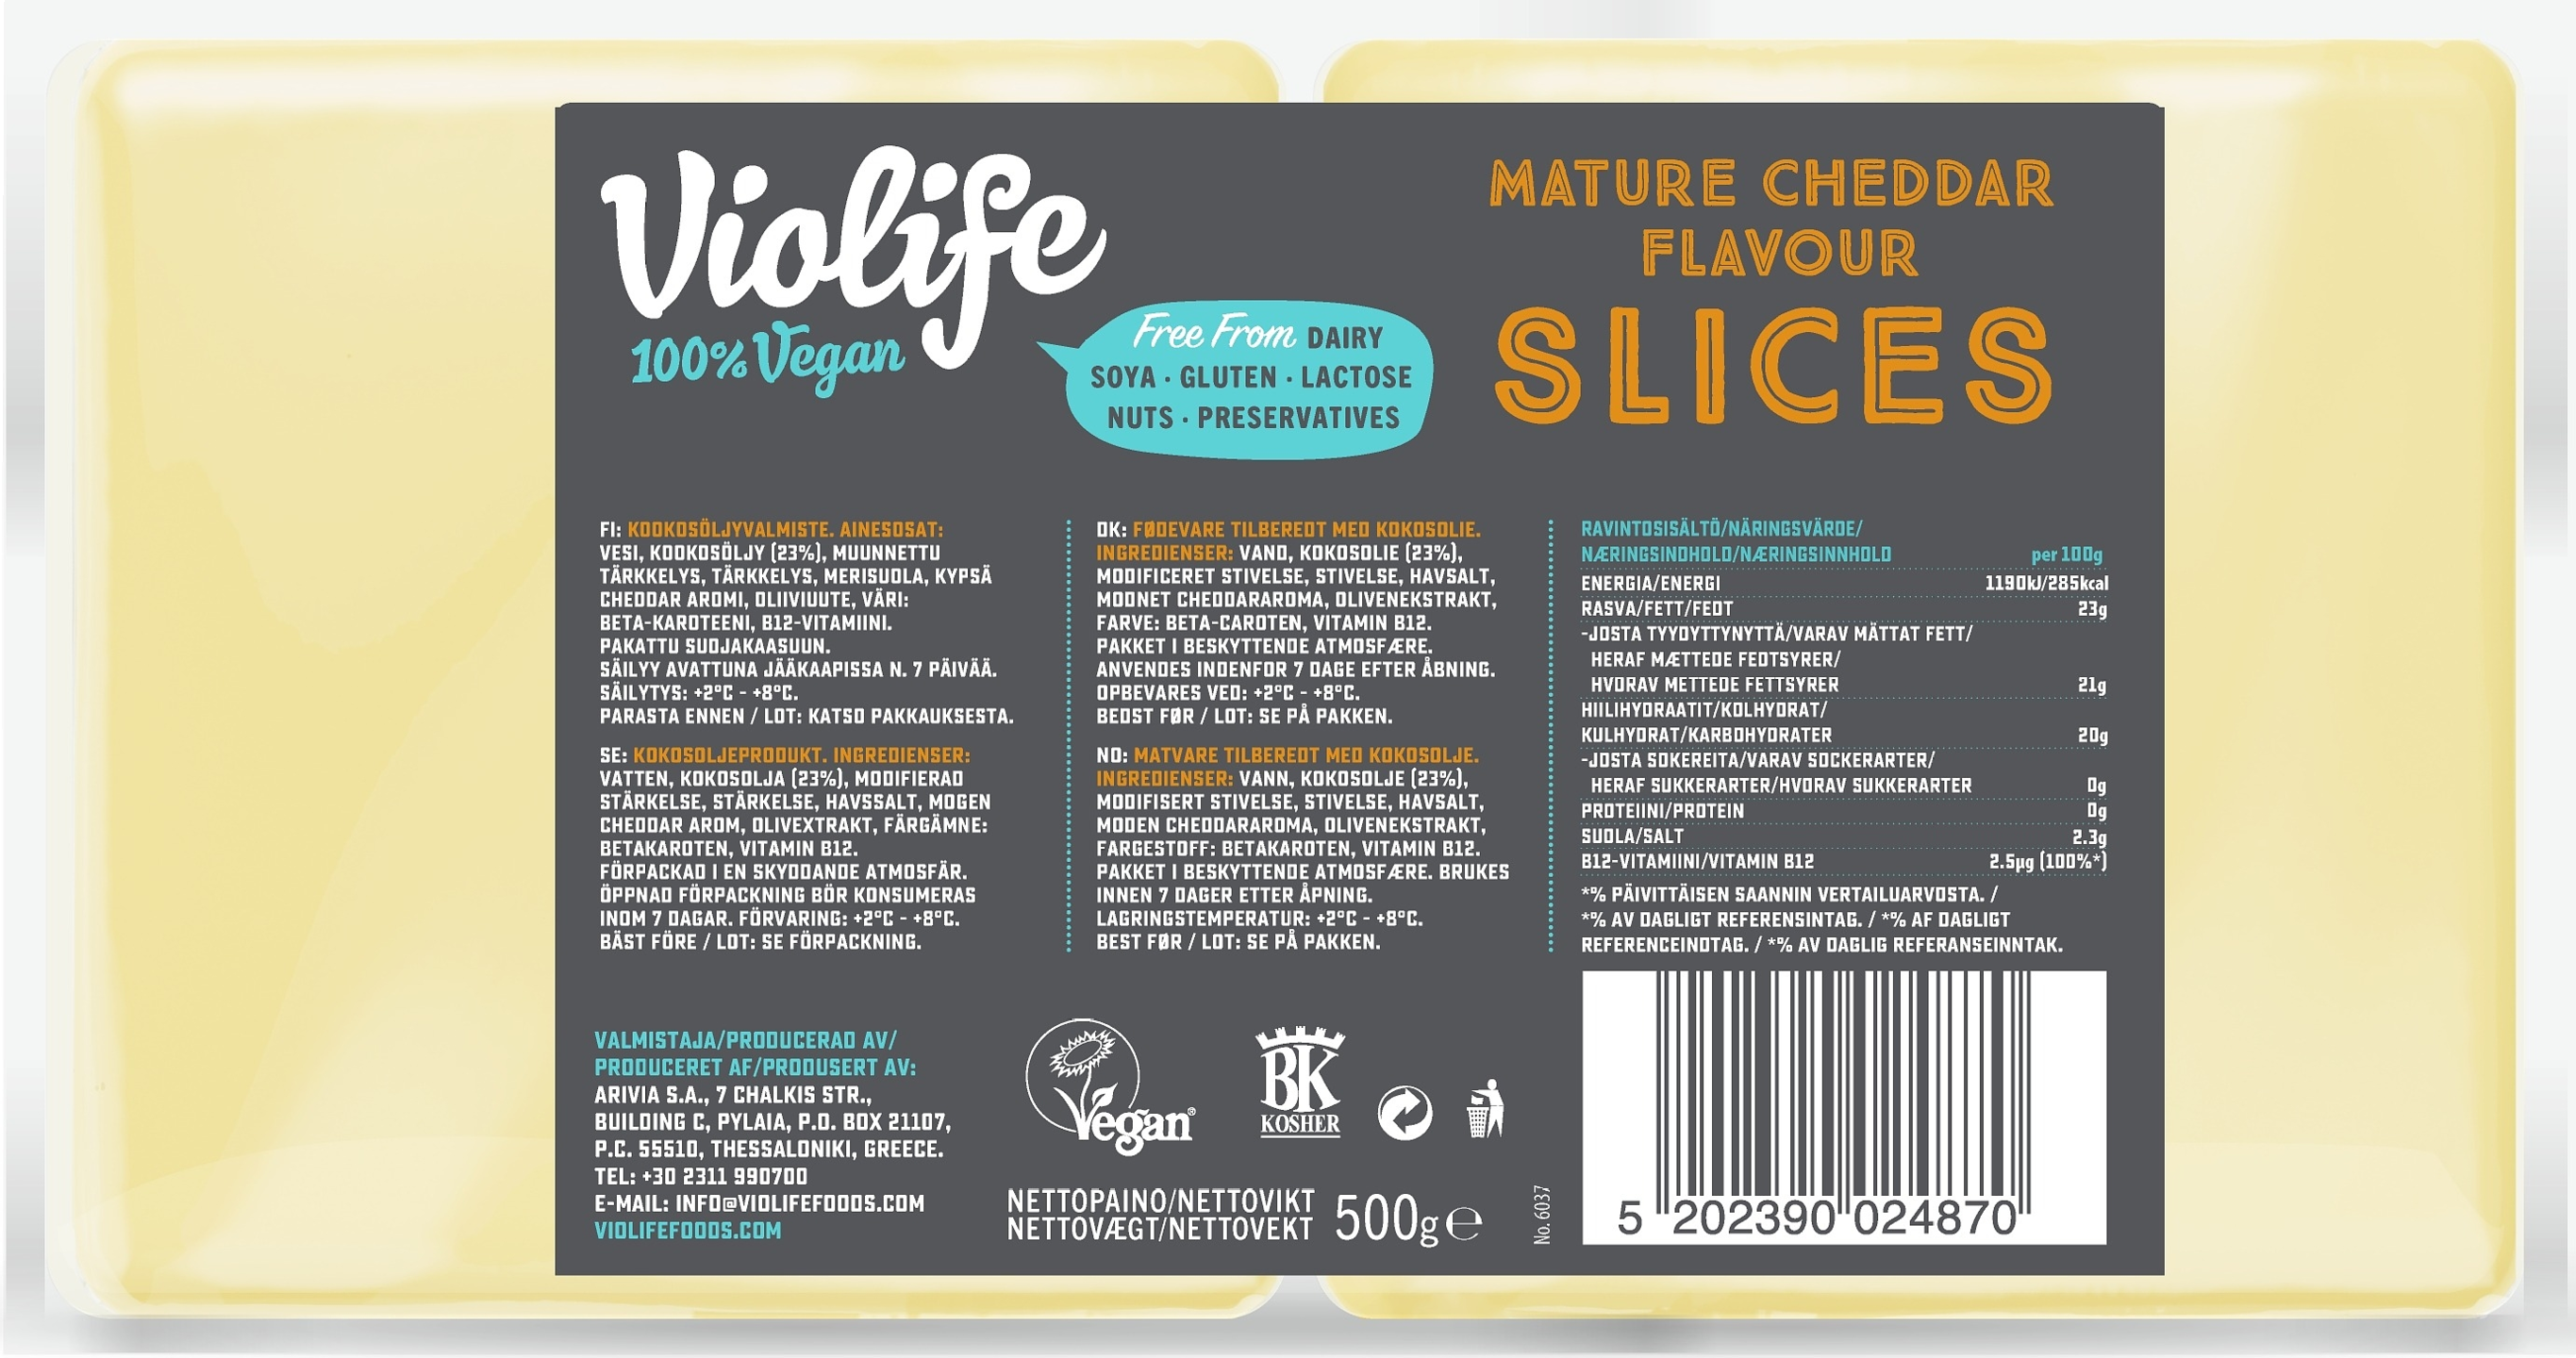 Violife 100% Vegan Mature Cheddar Flavour Slices 500g